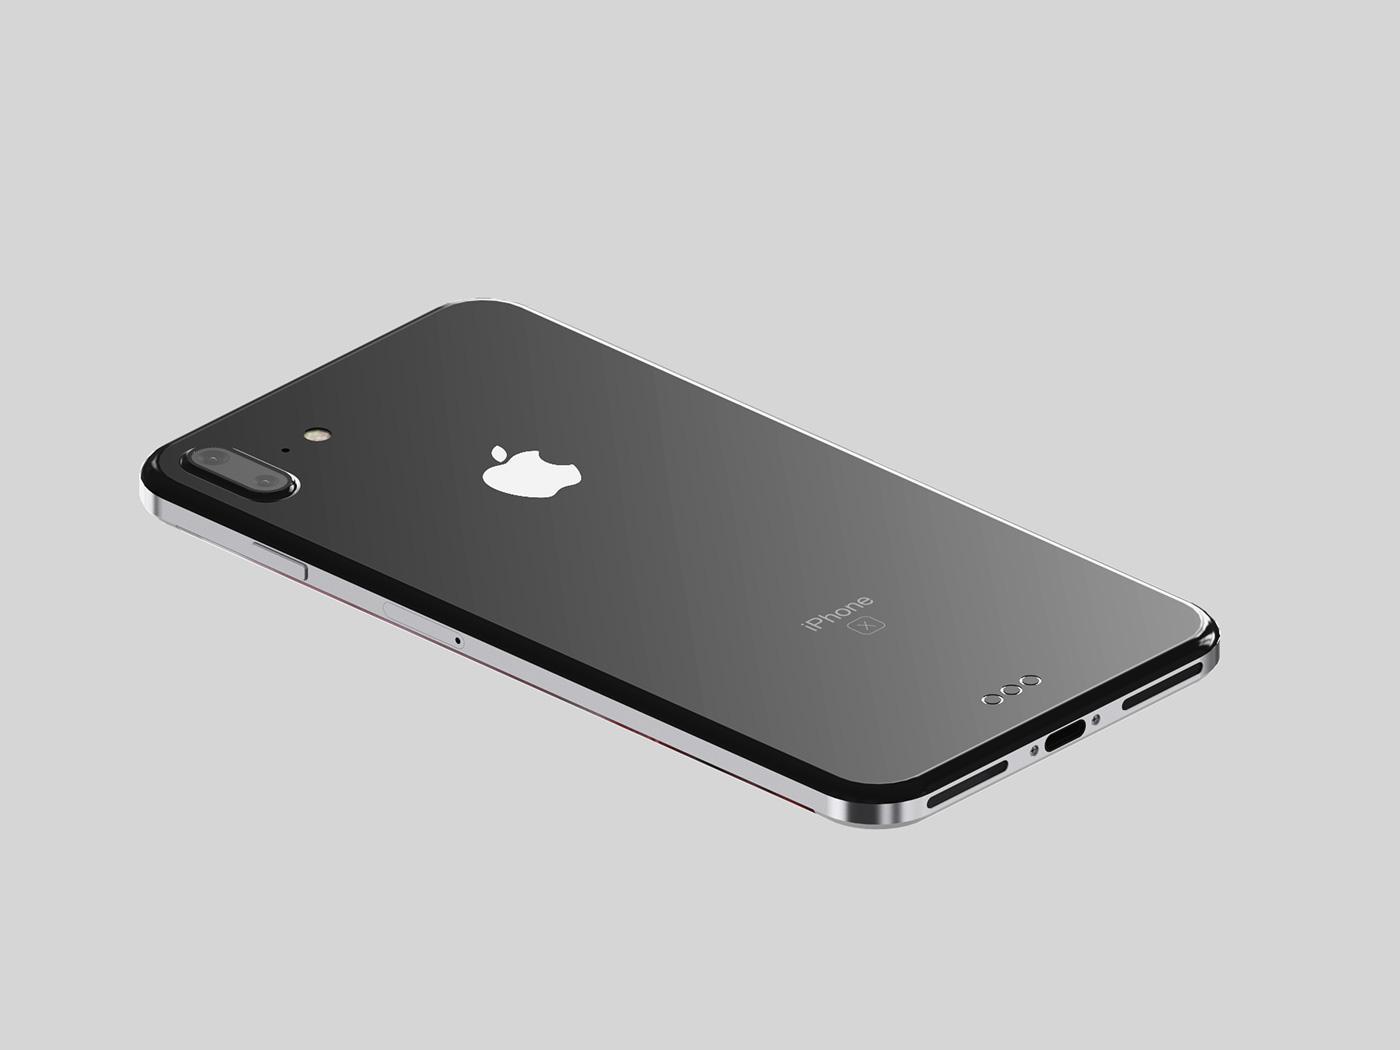  Apple diharapkan untuk membuang penutup belakang aluminium di iPhone 8